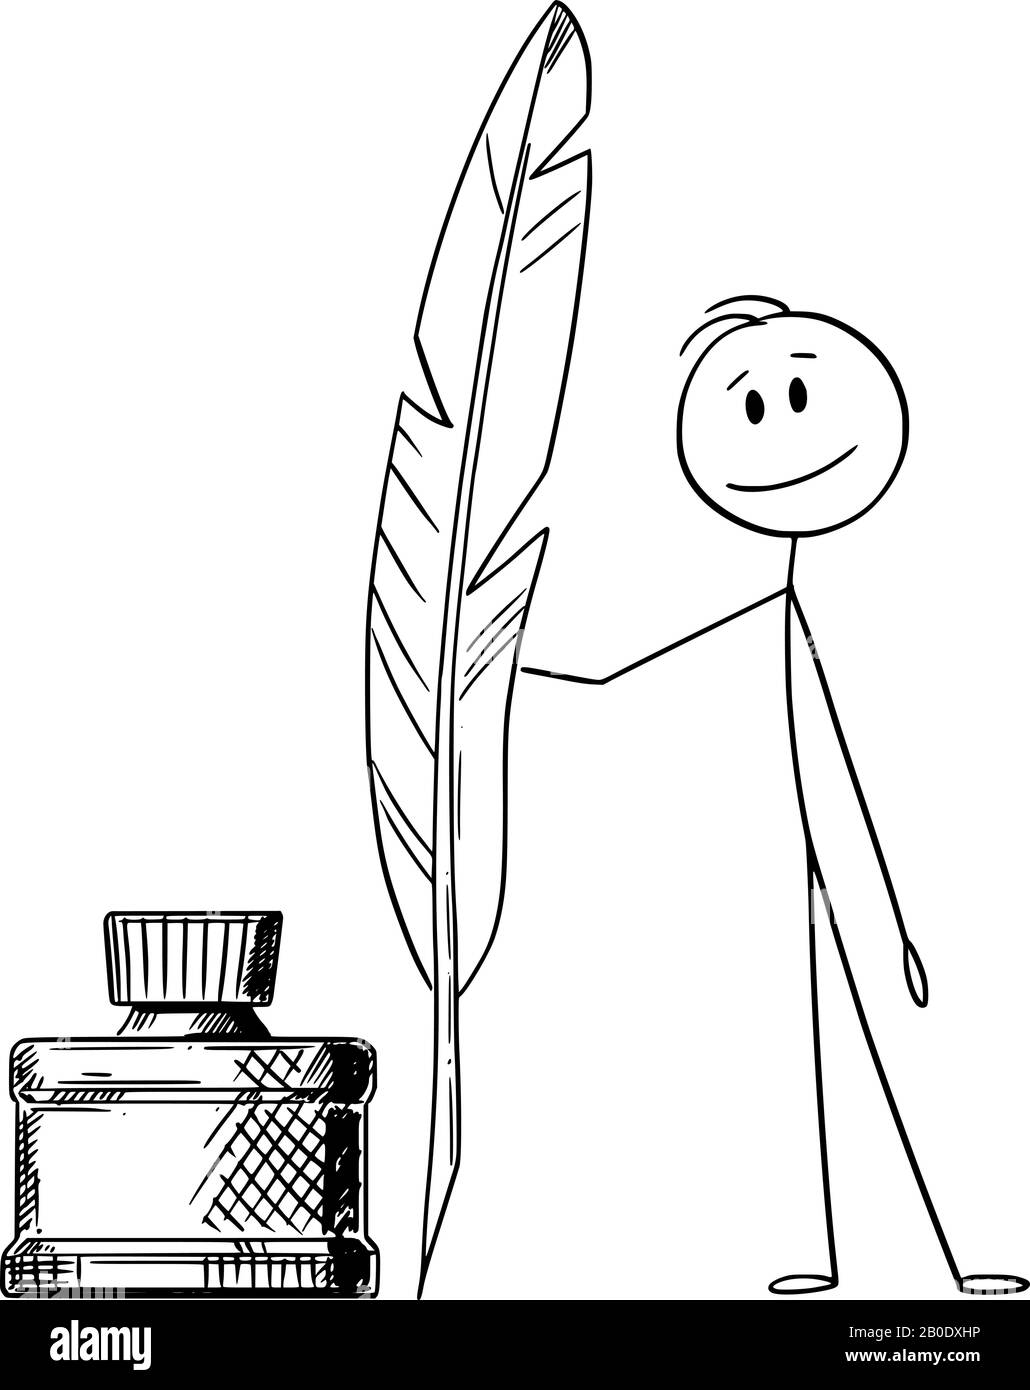 Figura del bastone del cartone animato vettoriale che disegna l'illustrazione concettuale dell'uomo, dello scrittore o del poeta con la penna di quill e la bottiglia dell'inchiostro. Illustrazione Vettoriale